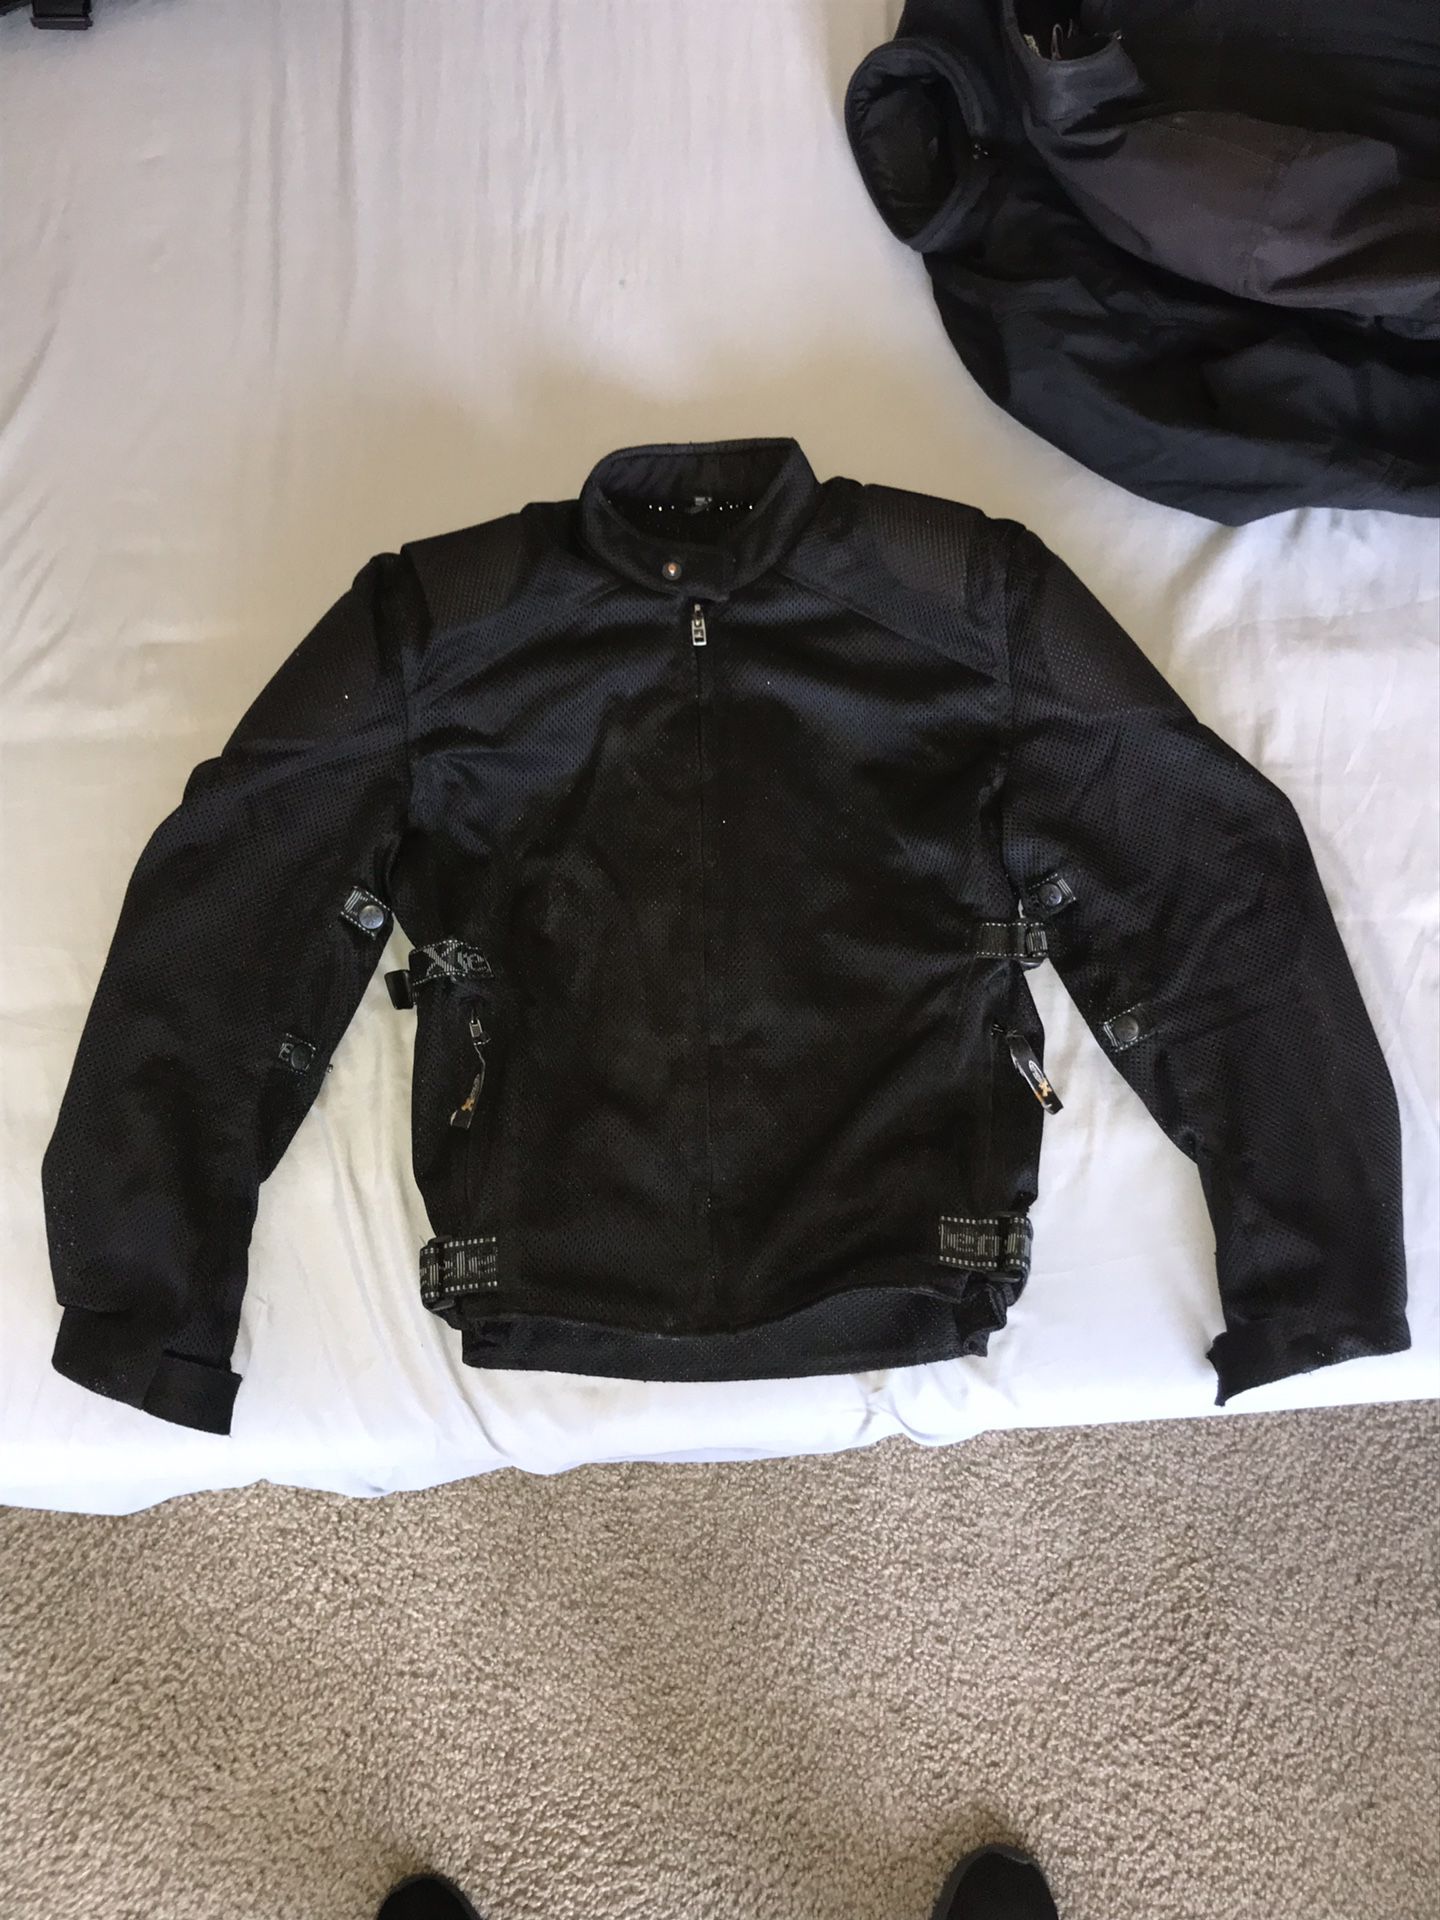 Extreme Motorcycle Jacket with padding